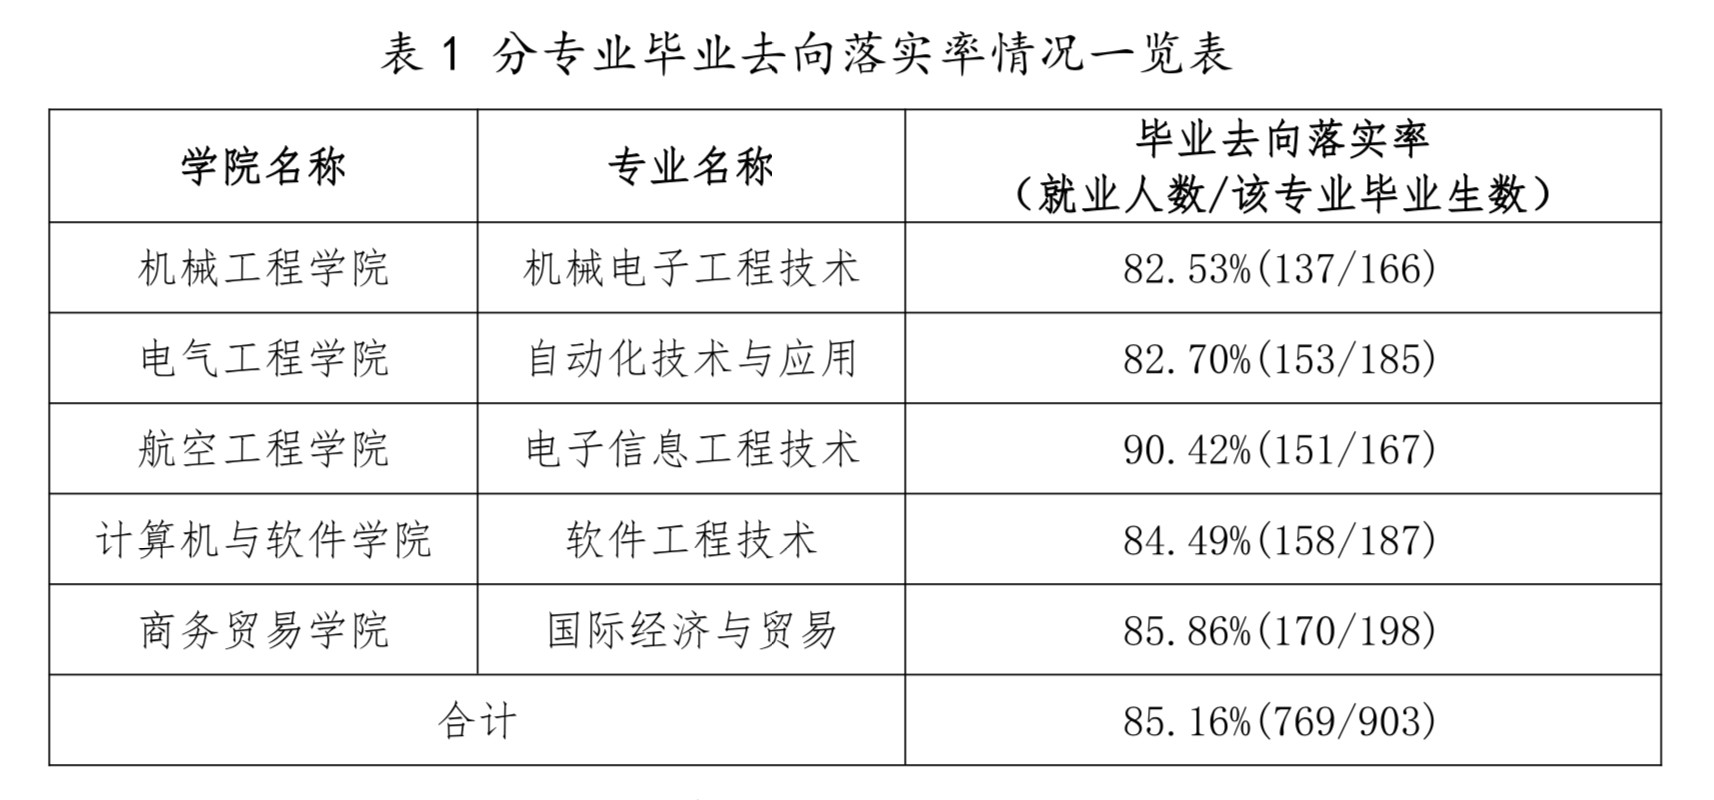 数据来源：《南京工业职业技术大学首届职教本科毕业生就业及人才培养情况报告》